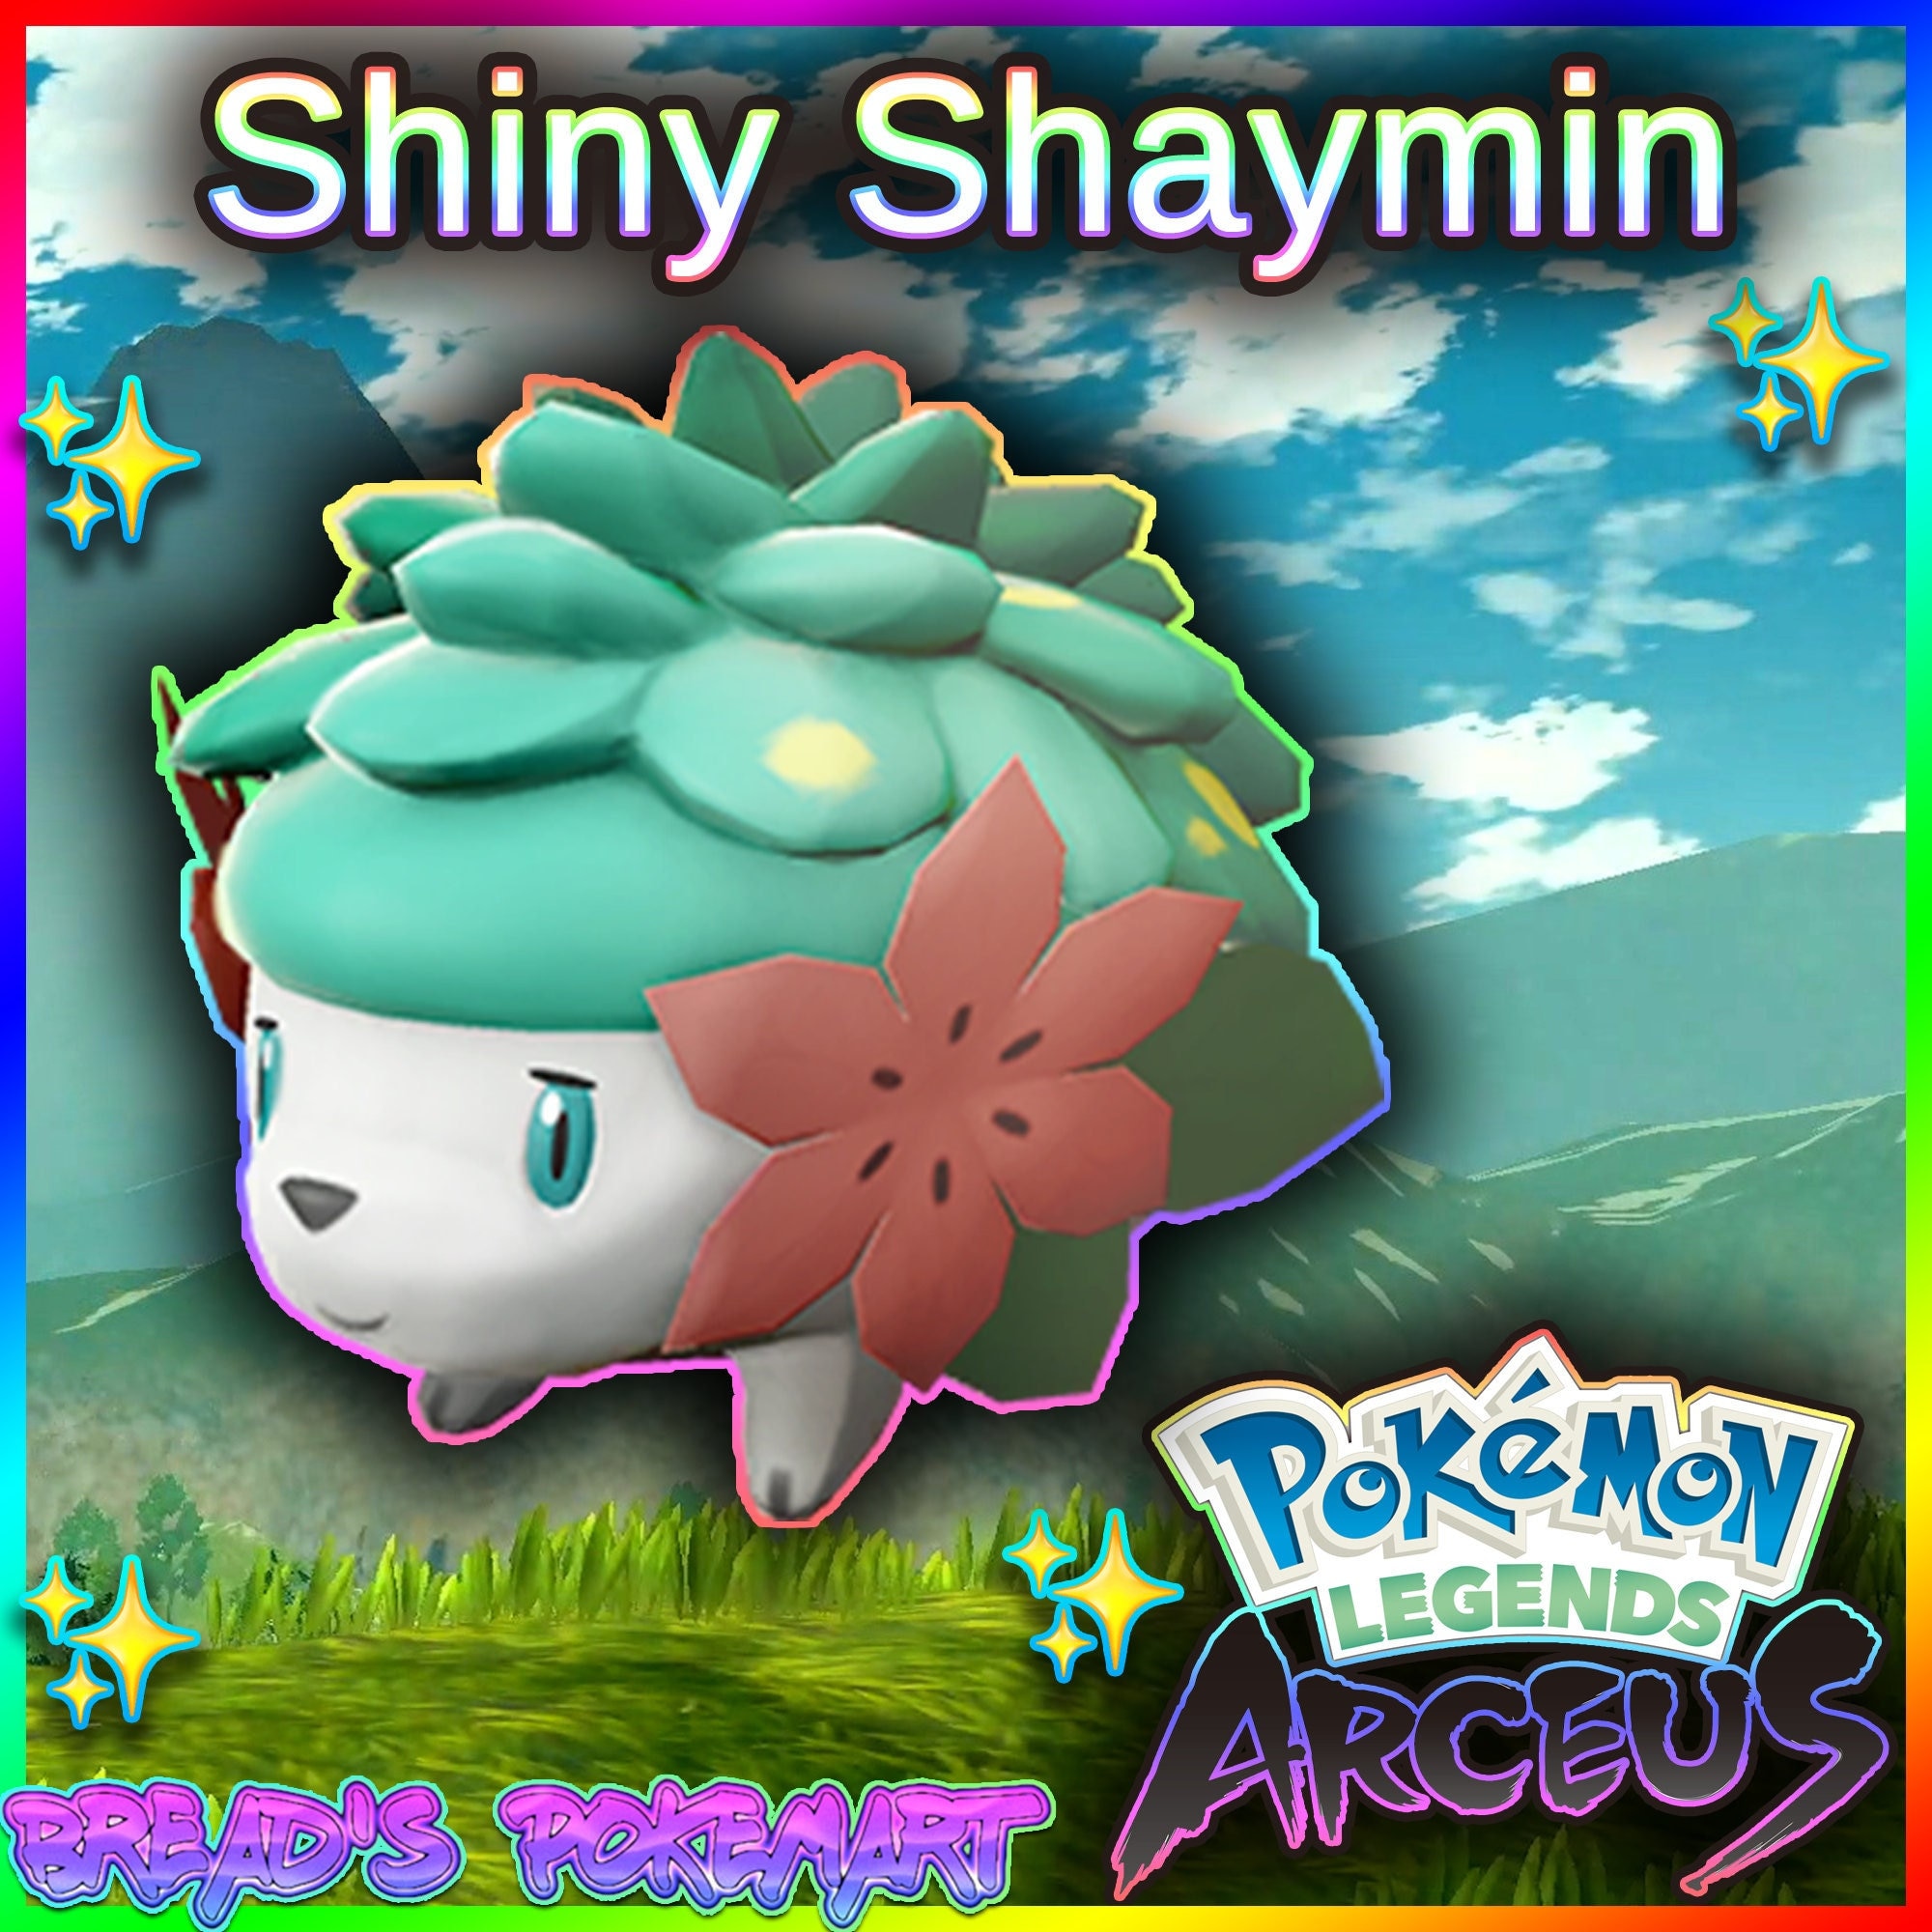 Shaymin Sky Forme v.2: Shining  Dog pokemon, Shiny pokemon, Cool pokemon